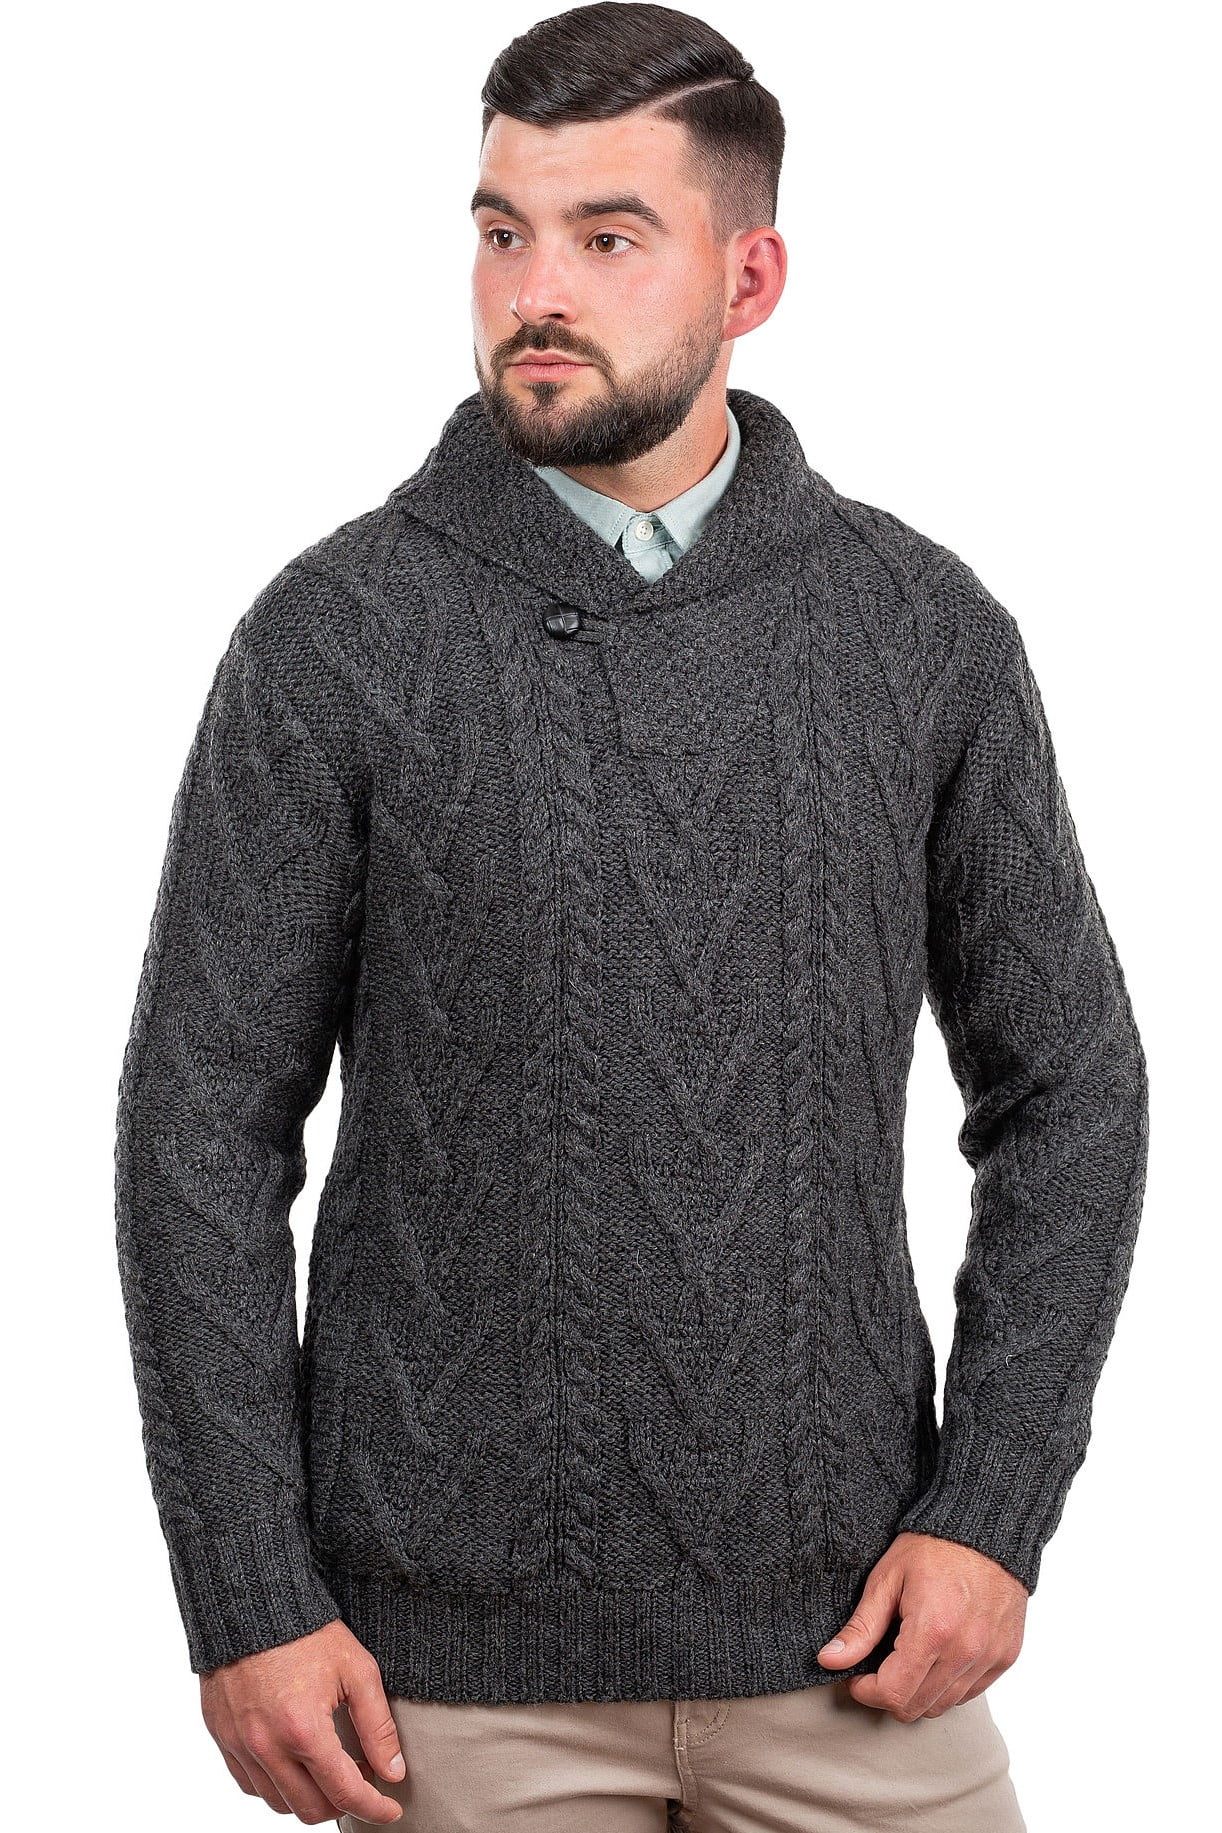 SAOL 100% Merino Wool Sweater Men's Aran Shawl Collar One Button Irish ...